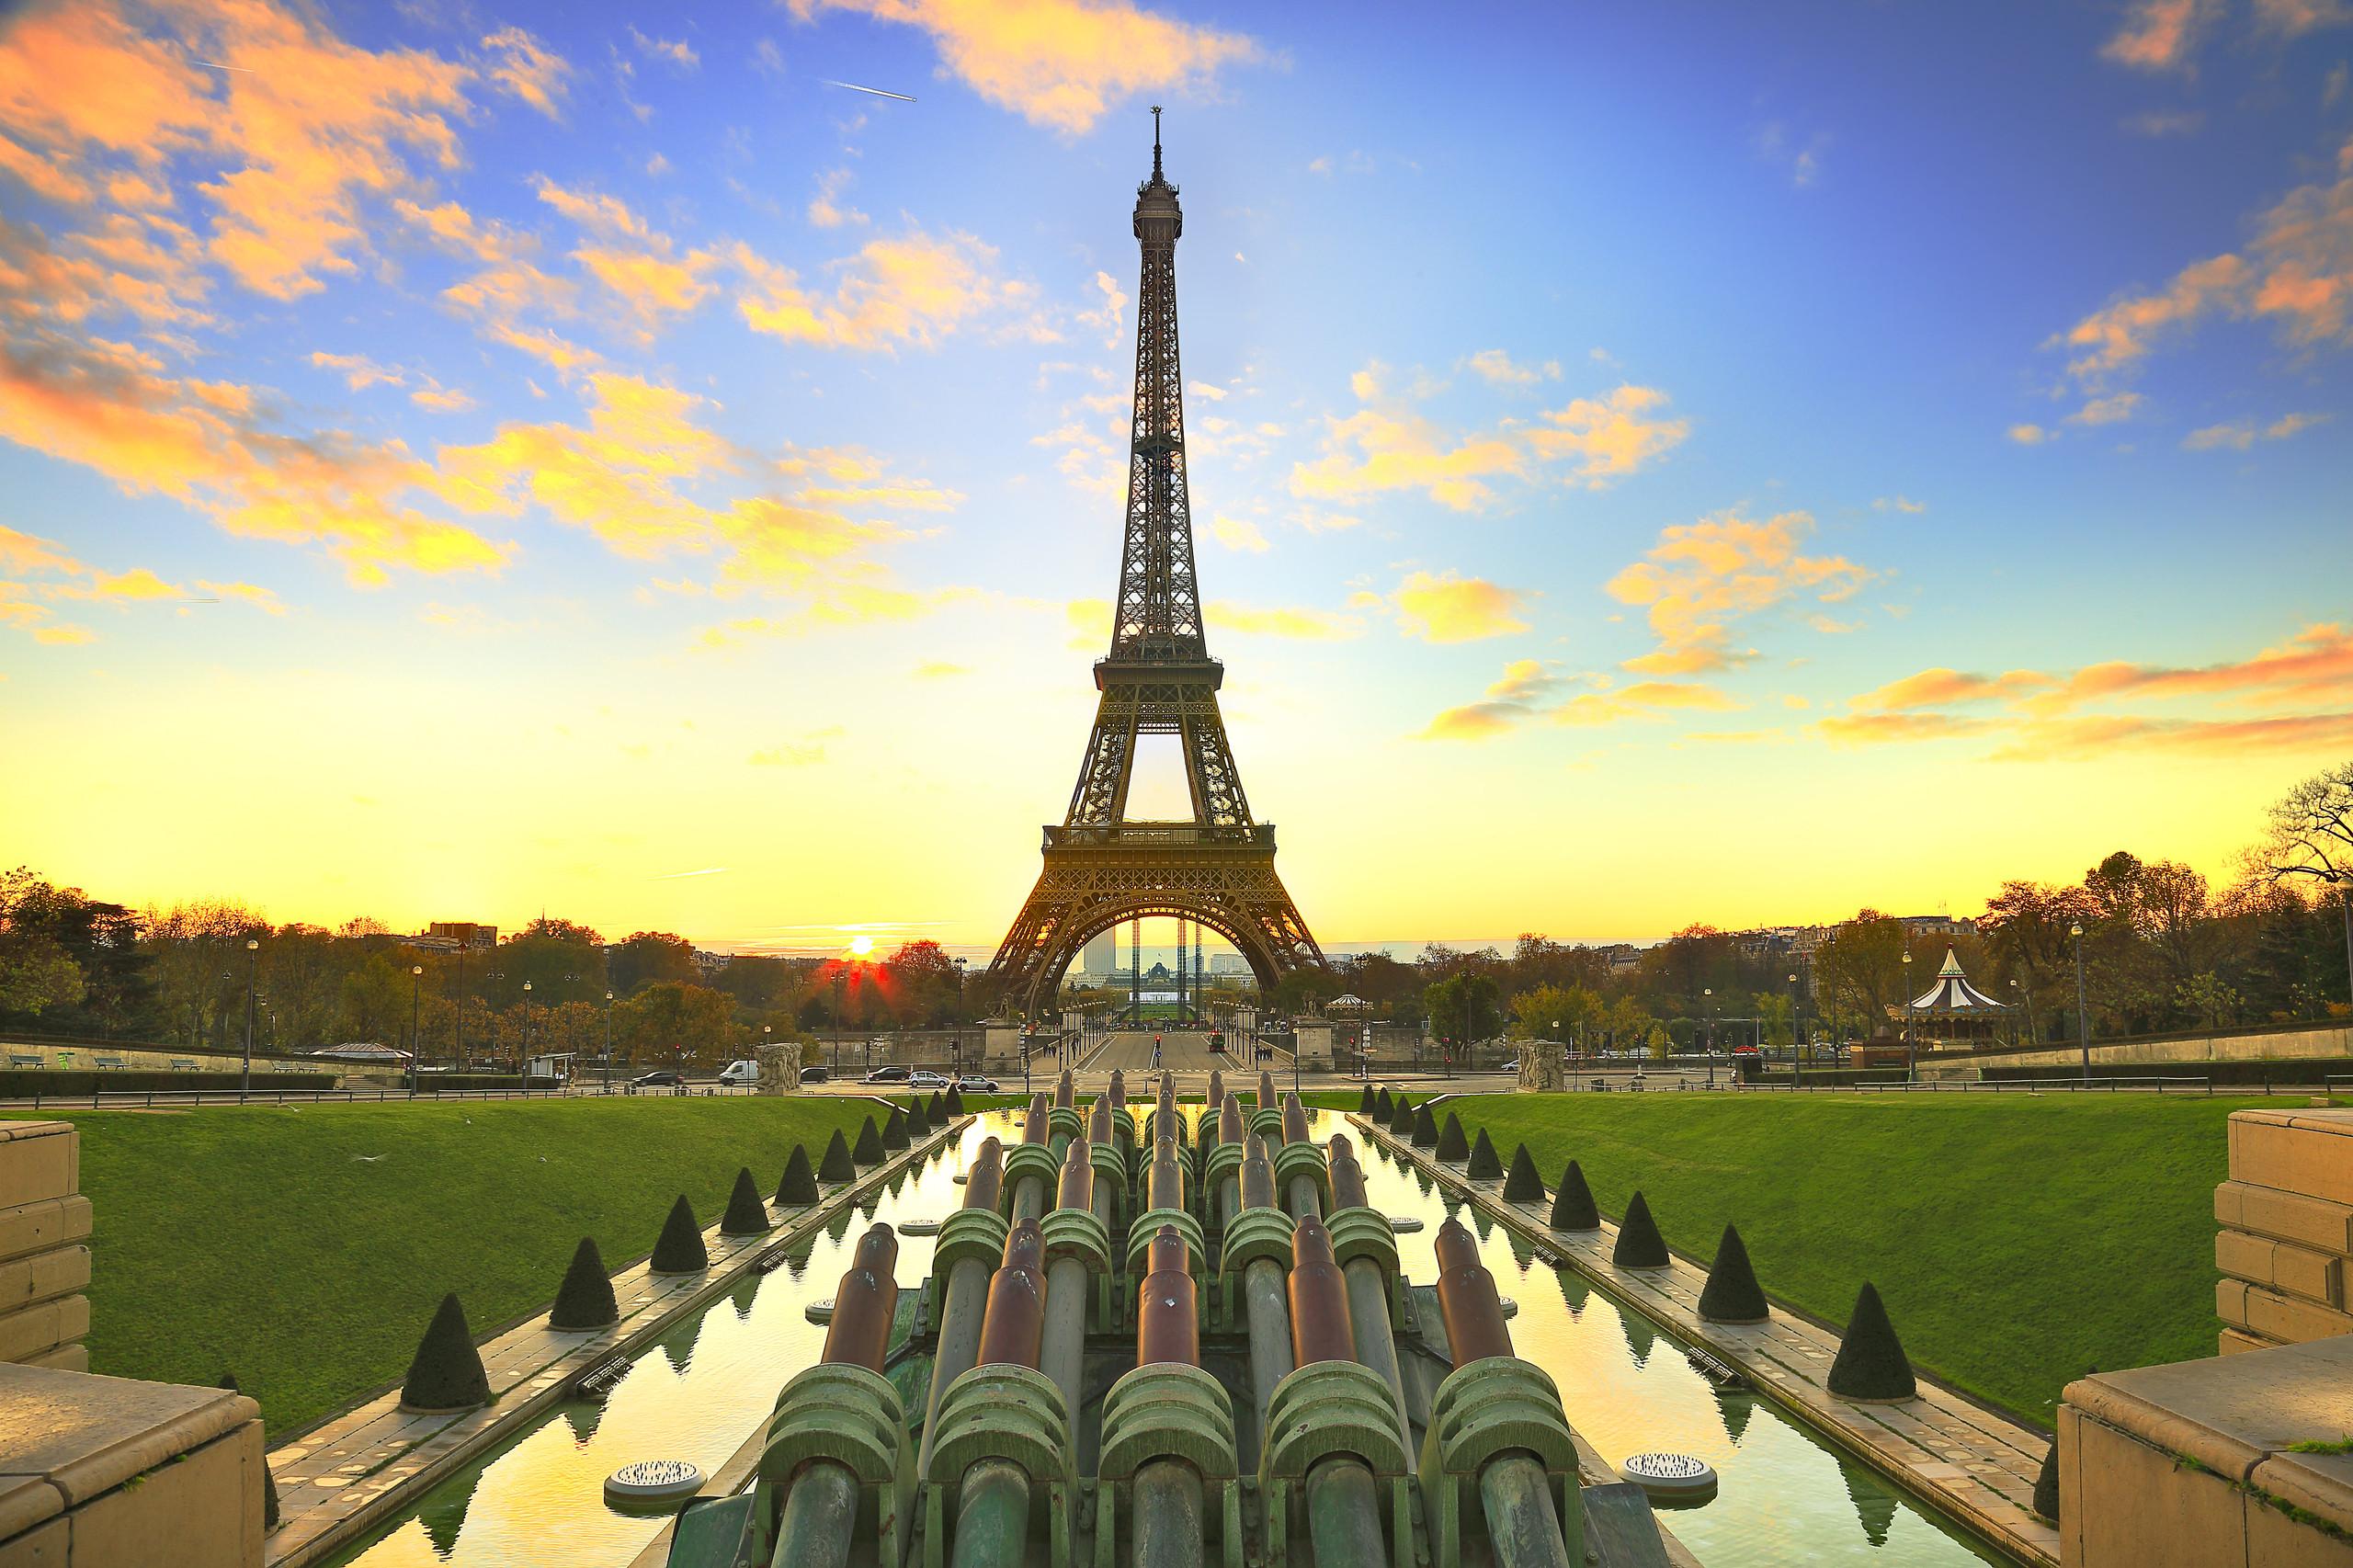 Attività ed esperienze low cost da fare a Parigi, vista Tour Eiffel
©seng chye teo/Getty Images